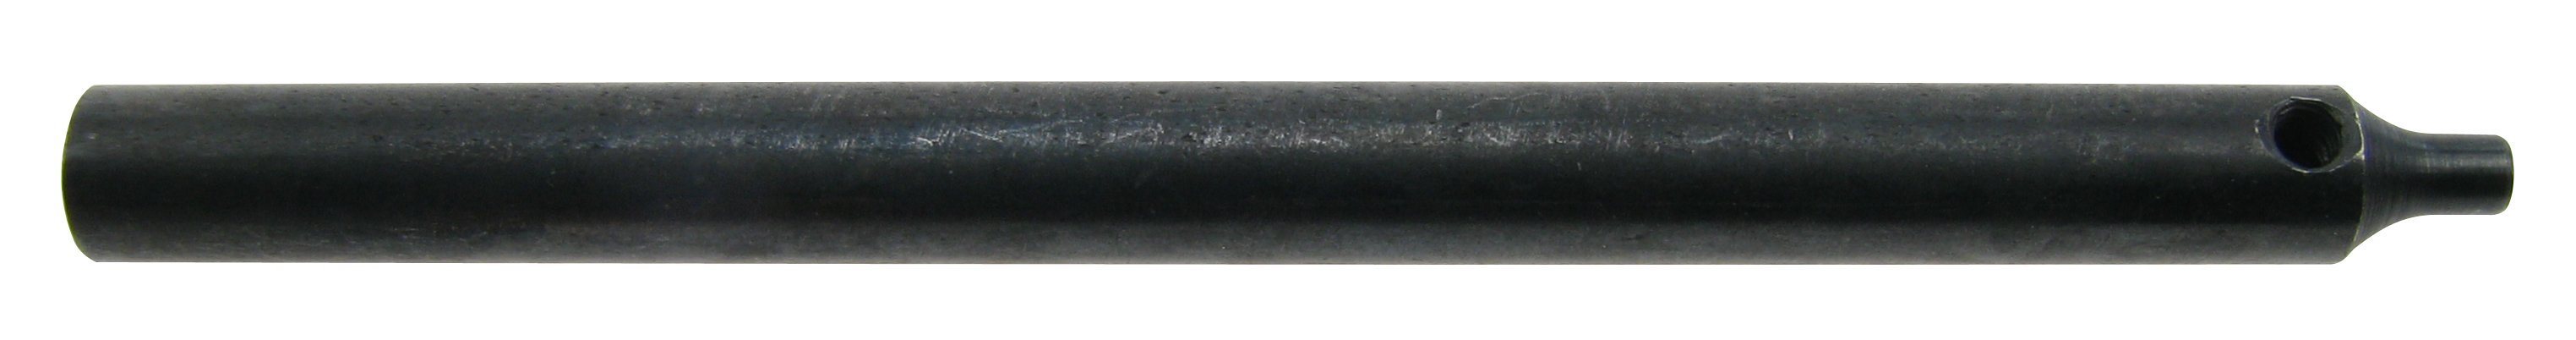 Dornhaltebrosche für Dorn 1,5 mm für Stiftentferner 4229120 Flume